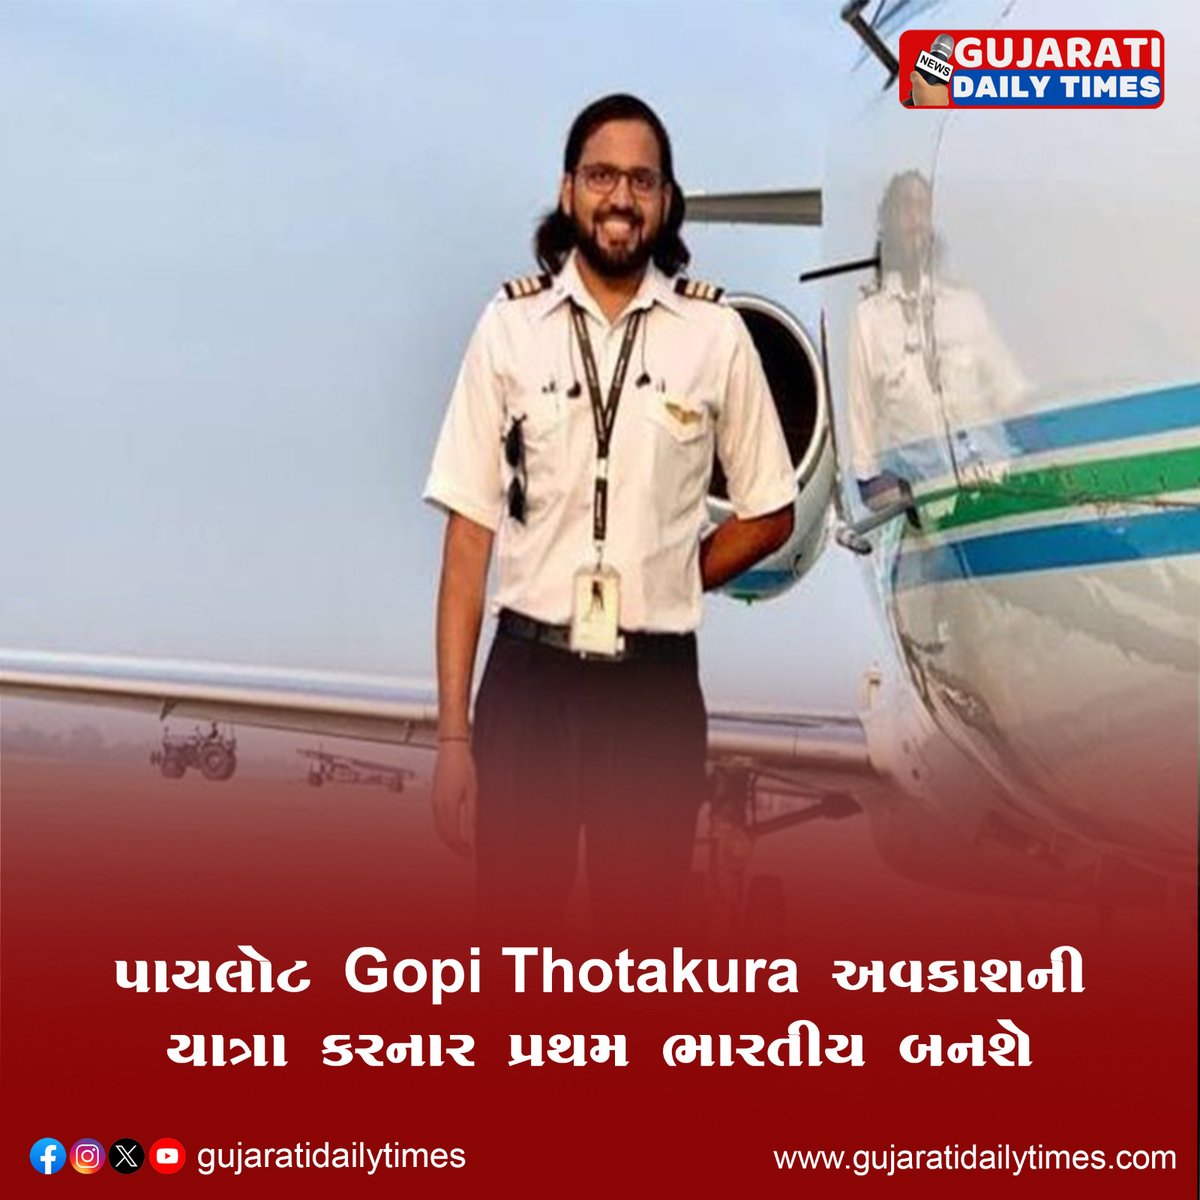 પાયલોટ Gopi Thotakura અવકાશની યાત્રા કરનાર પ્રથમ ભારતીય બનશે..   
#Gopithotakura #Space #Indian #IndianPilot #SpaceTourism